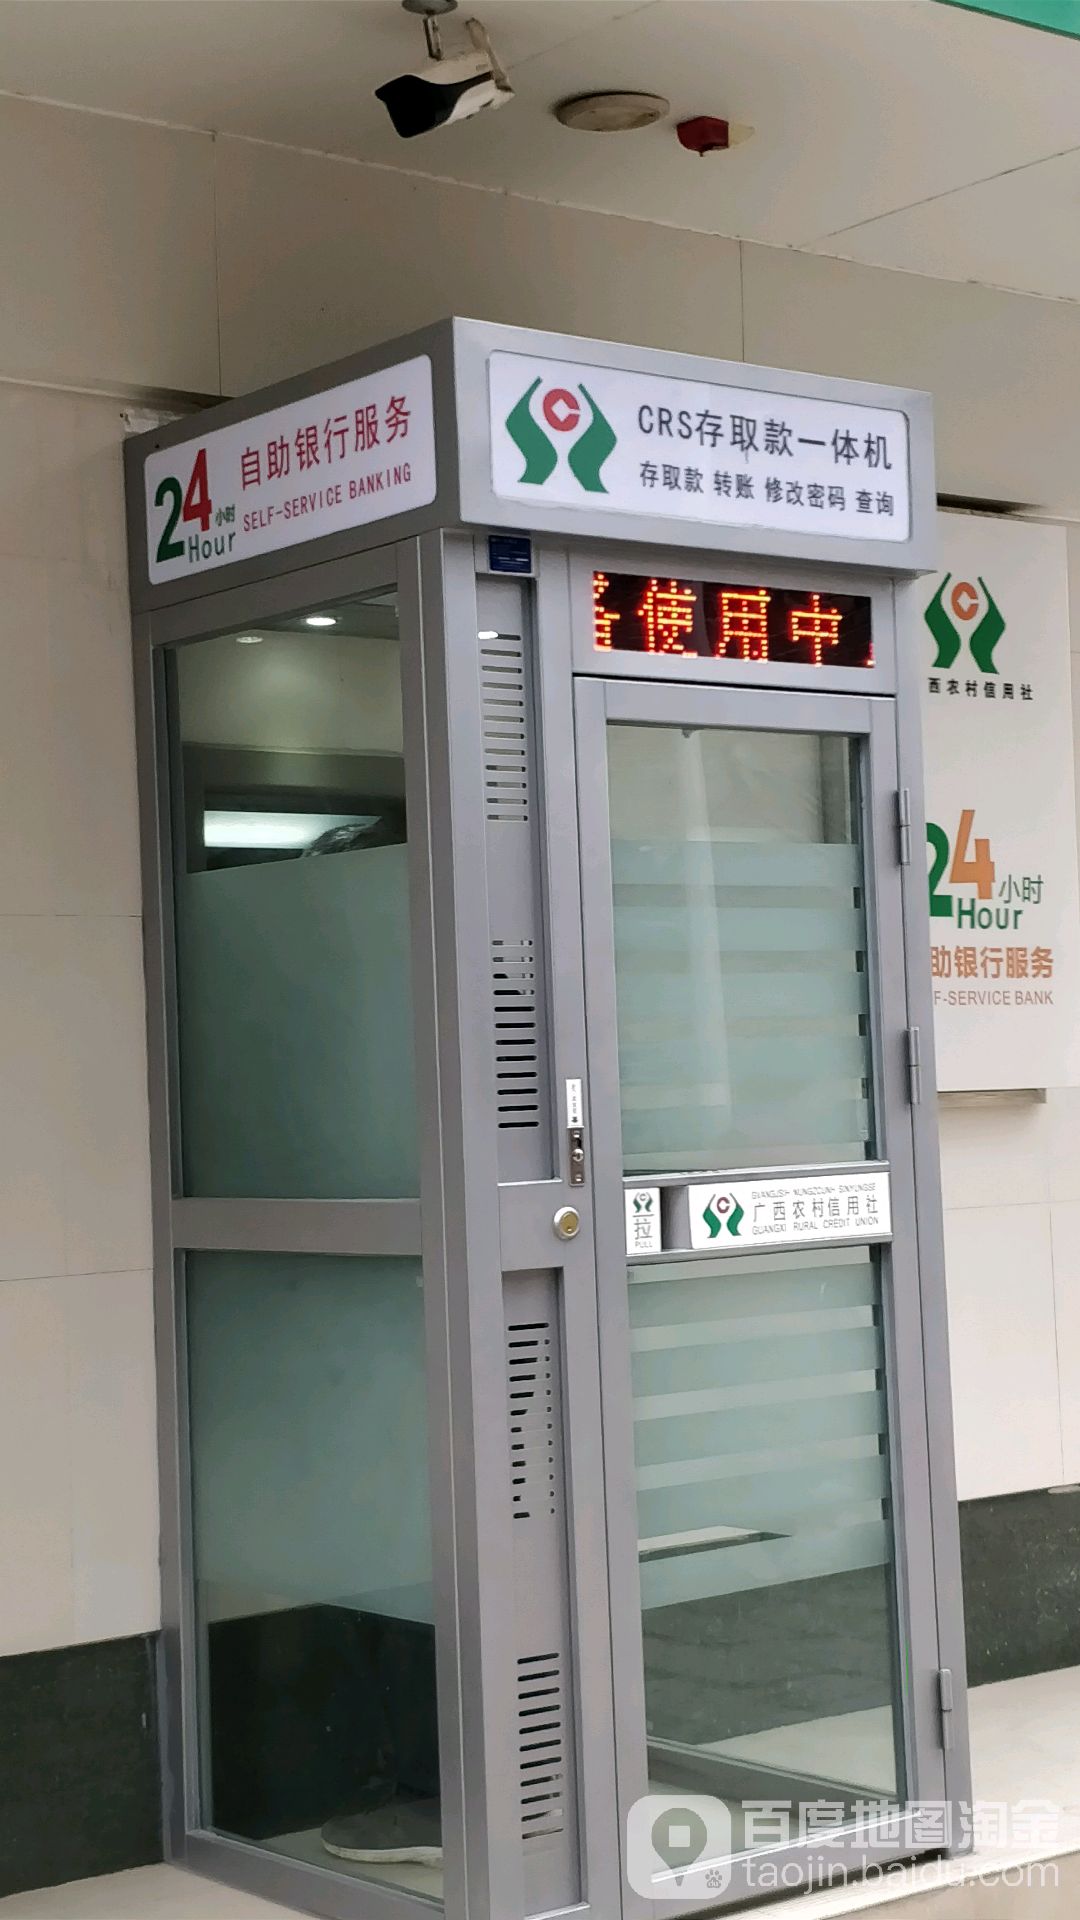 广西农村信用合作社24小时自助银行